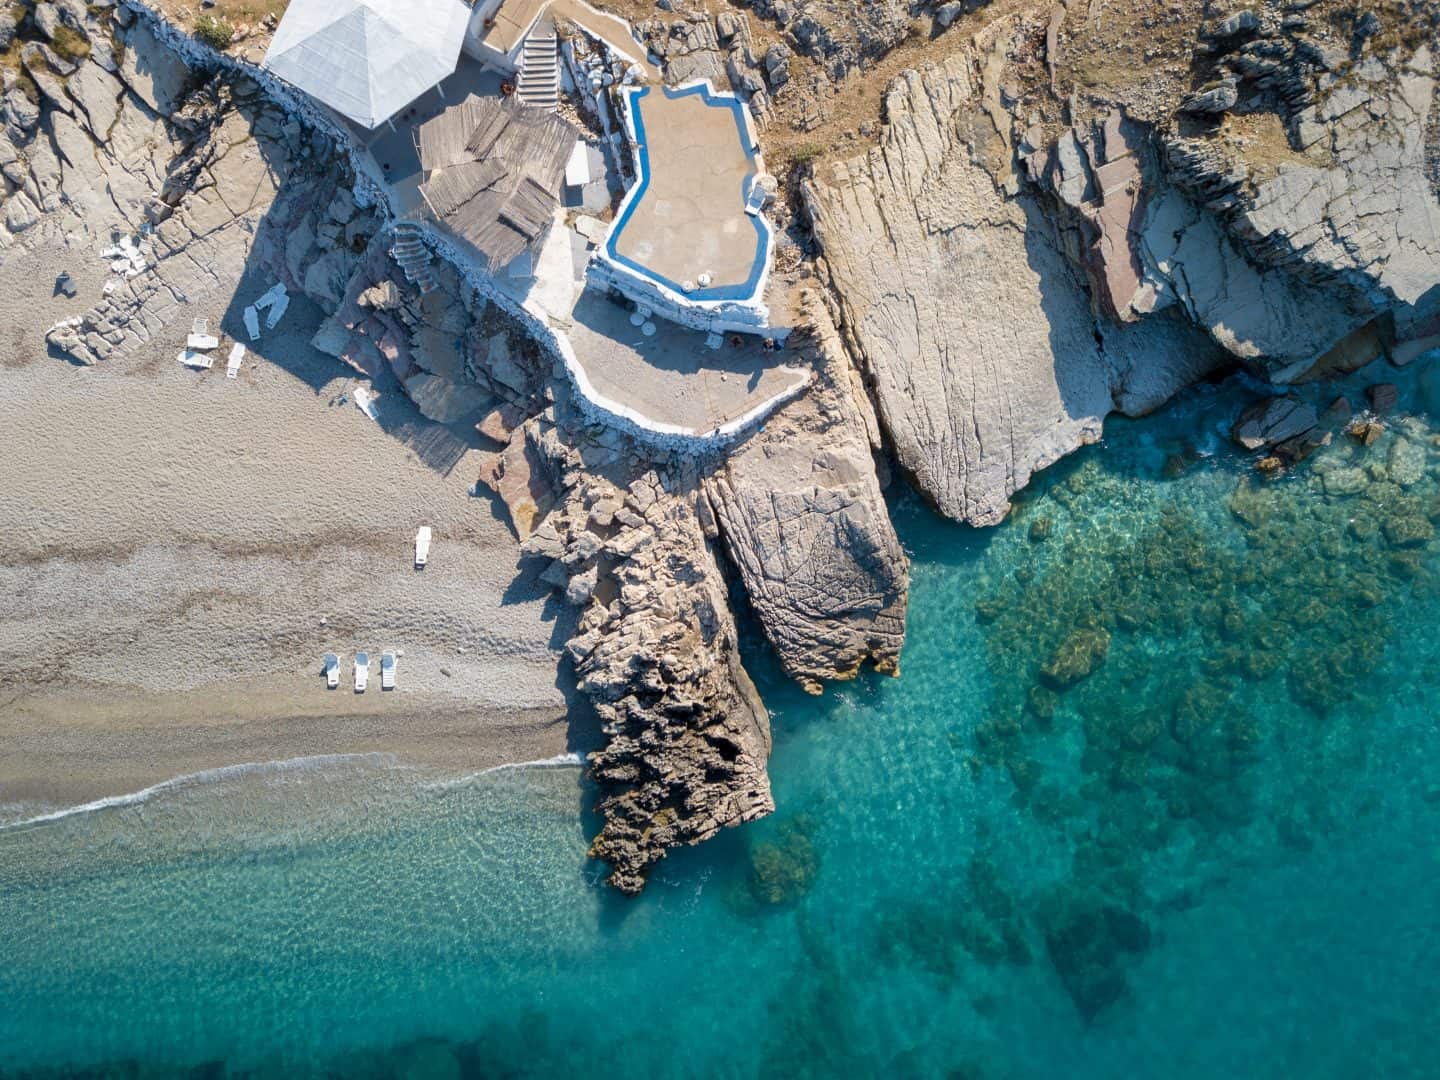 cómo pasar una semana en Albania, vista aérea de la estructura de piedra en un acantilado con vistas a la playa de arena y al océano azul transparente